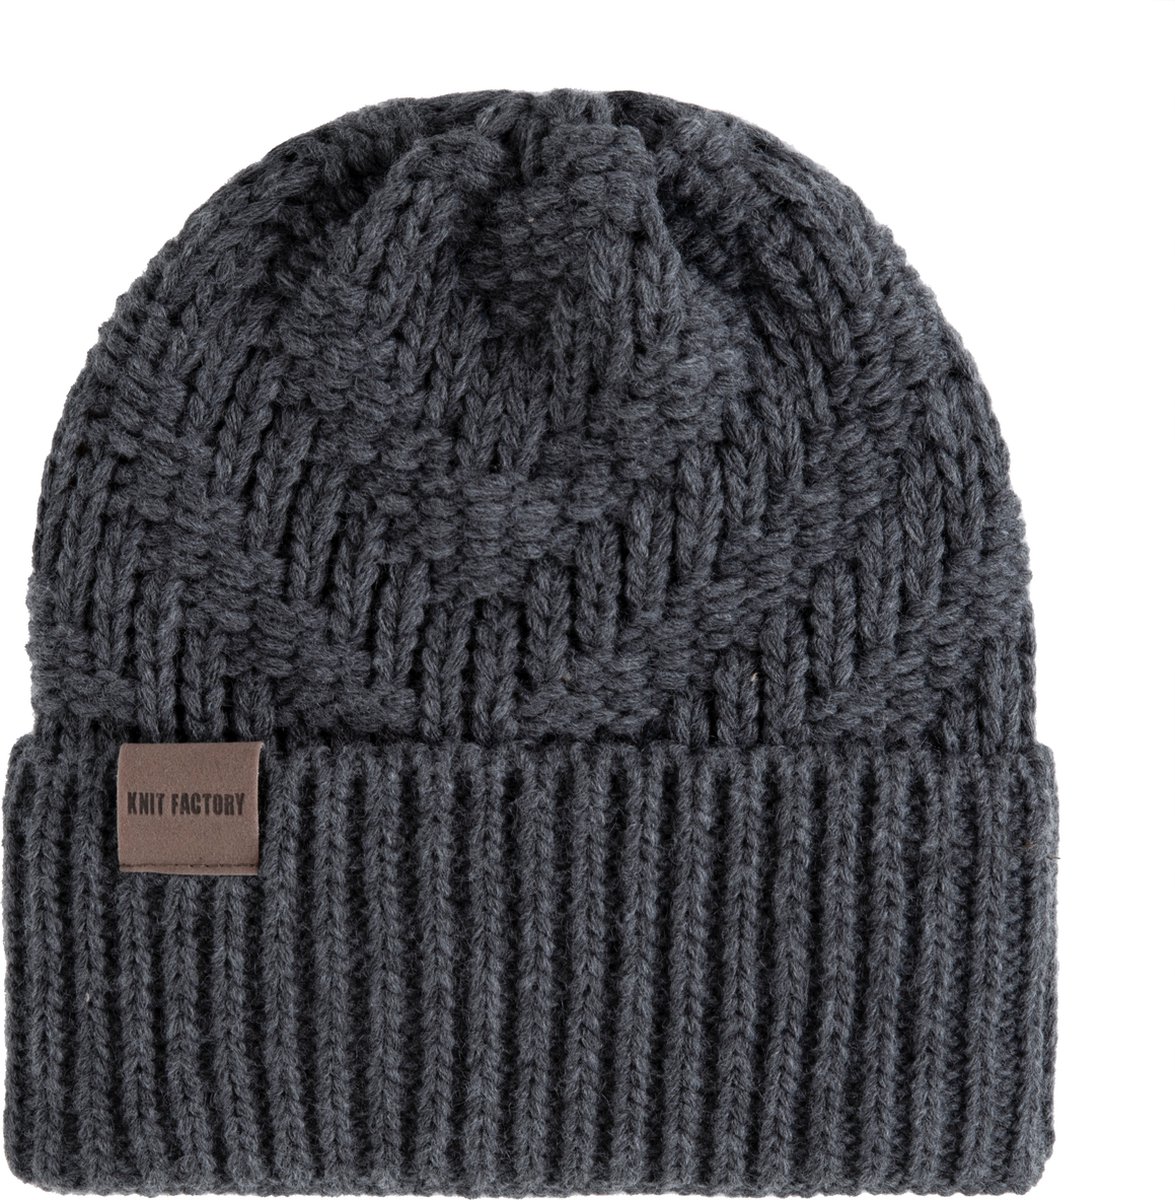 Knit Factory Sally Gebreide Muts Heren & Dames - Beanie hat - Antraciet - Grofgebreid - Warme donkergrijs Wintermuts - Unisex - One Size